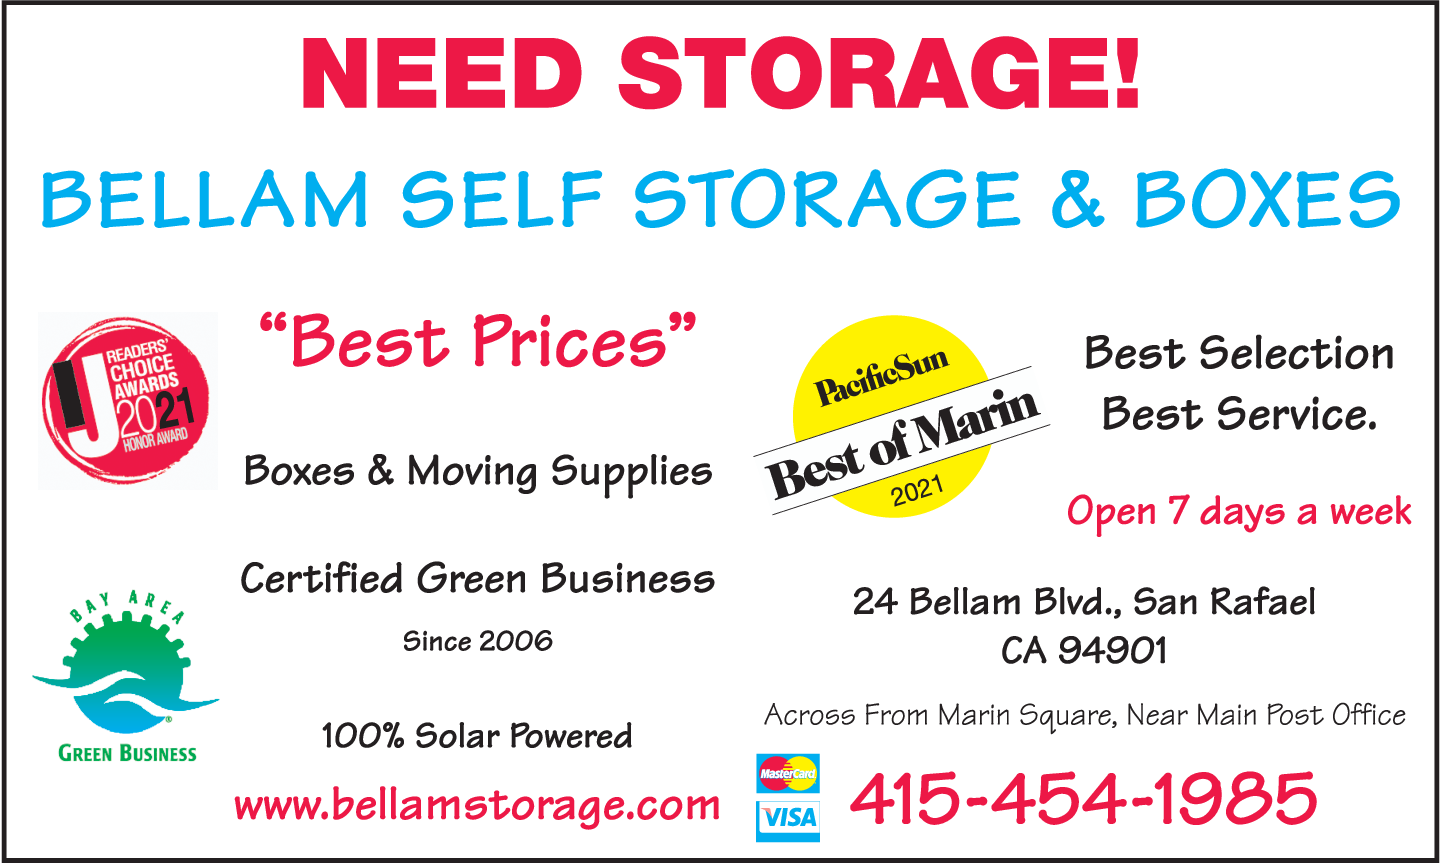 Bellam Self Storage & Boxes